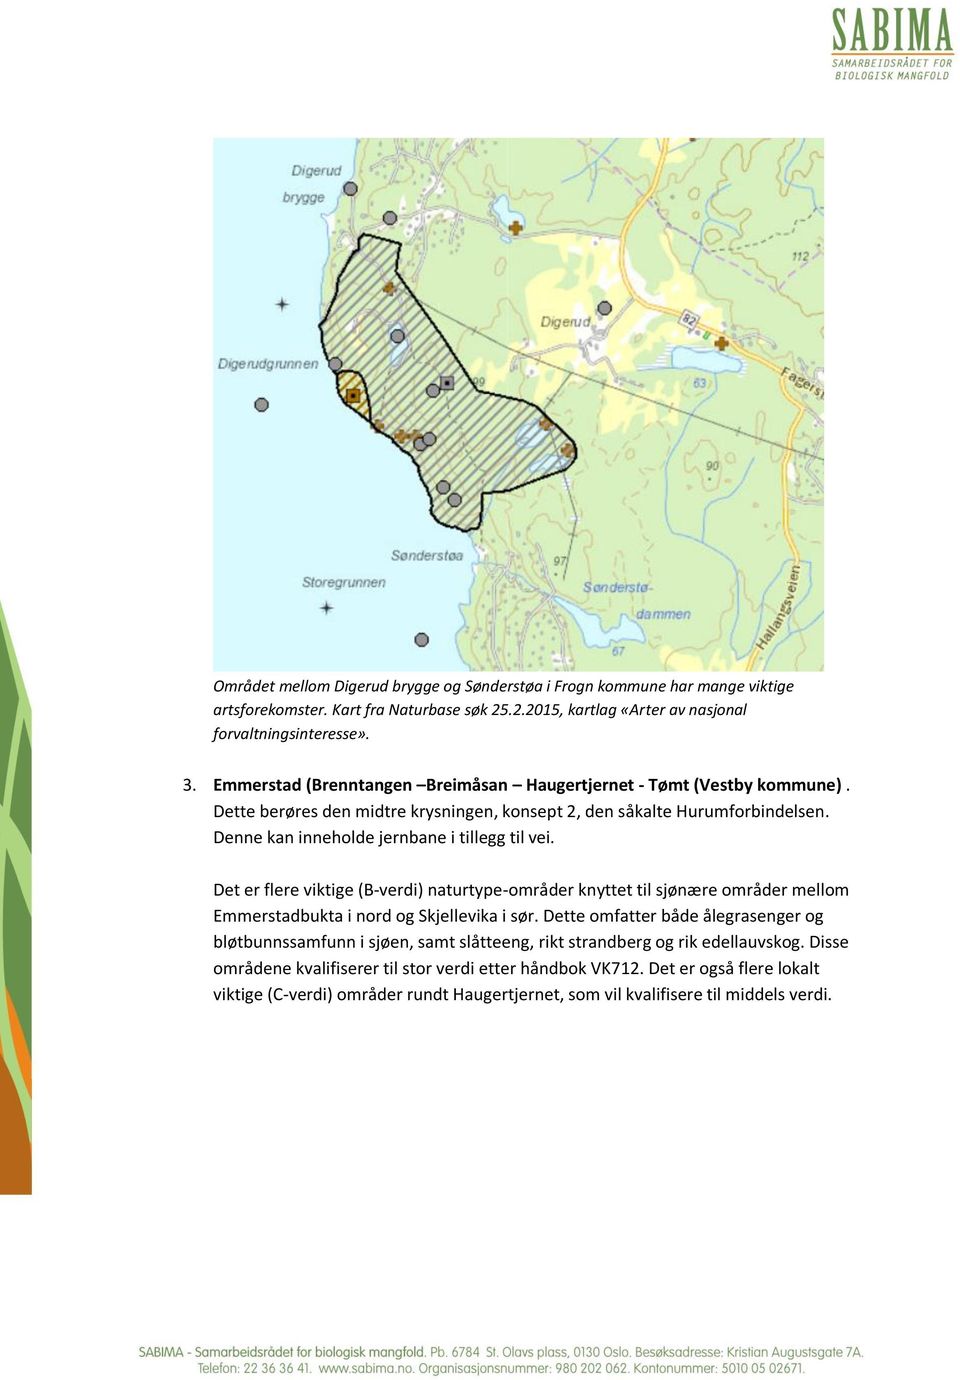 Det er flere viktige (B-verdi) naturtype-områder knyttet til sjønære områder mellom Emmerstadbukta i nord og Skjellevika i sør.